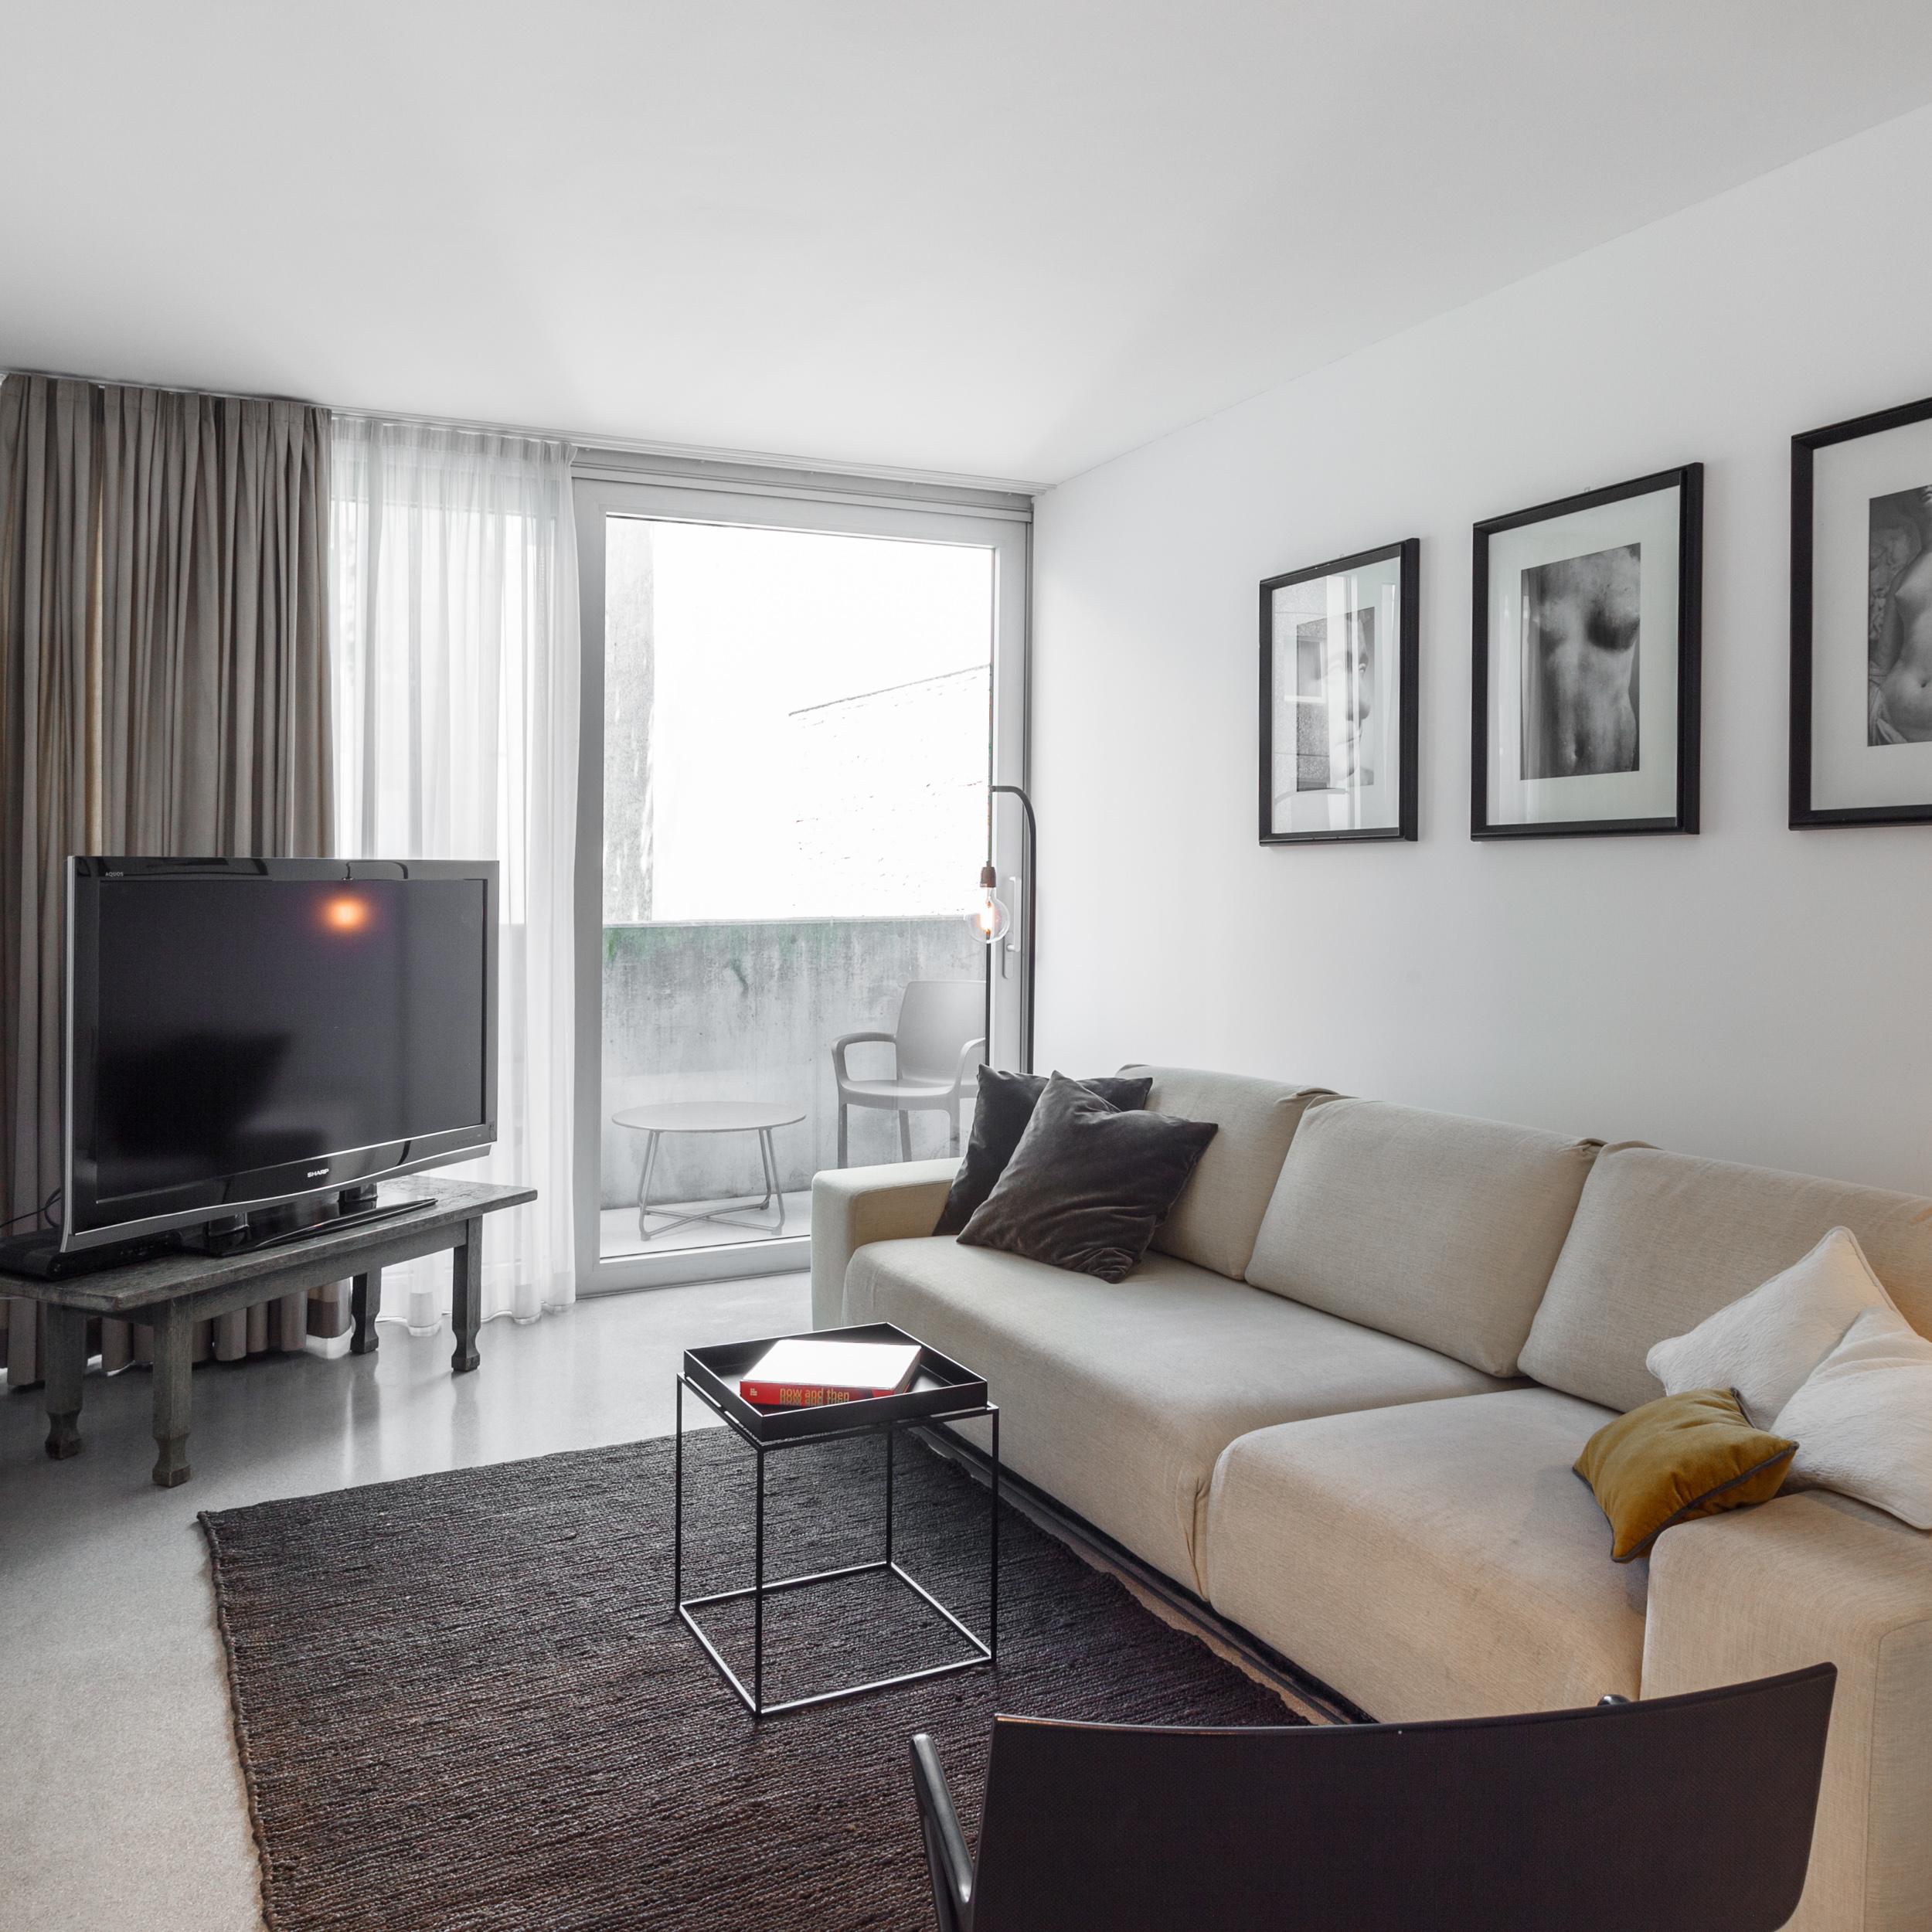 Wohnzimmer in Grau/Weiß #beistelltisch #gästezimmer #loft #schlafsofa #ausziehcouch #gästesofa ©EMMA B. HOME